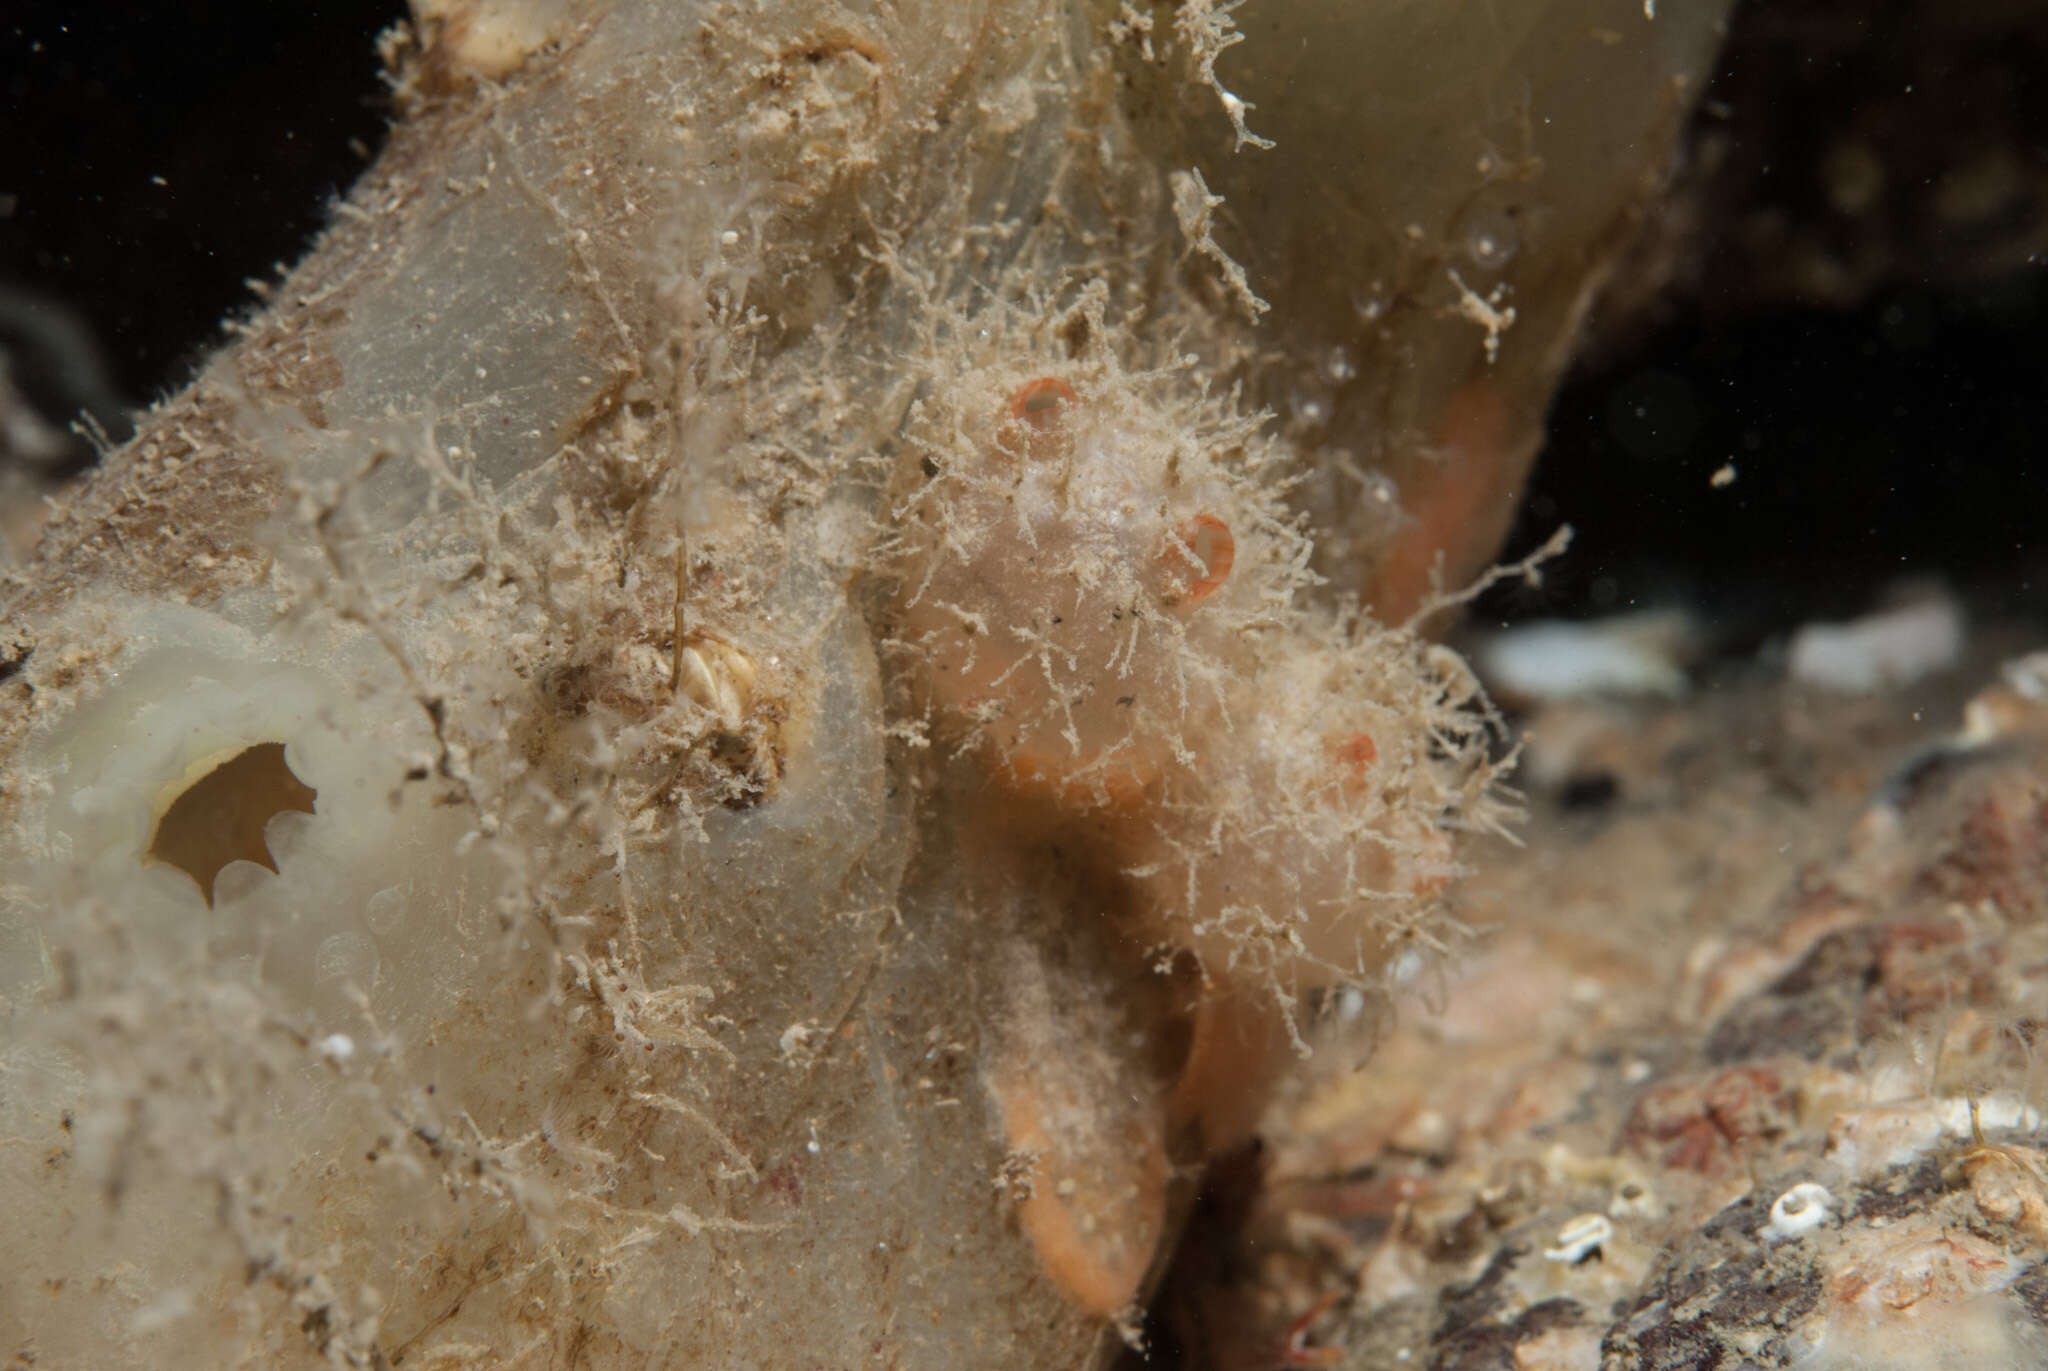 Image of cactus sea squirt